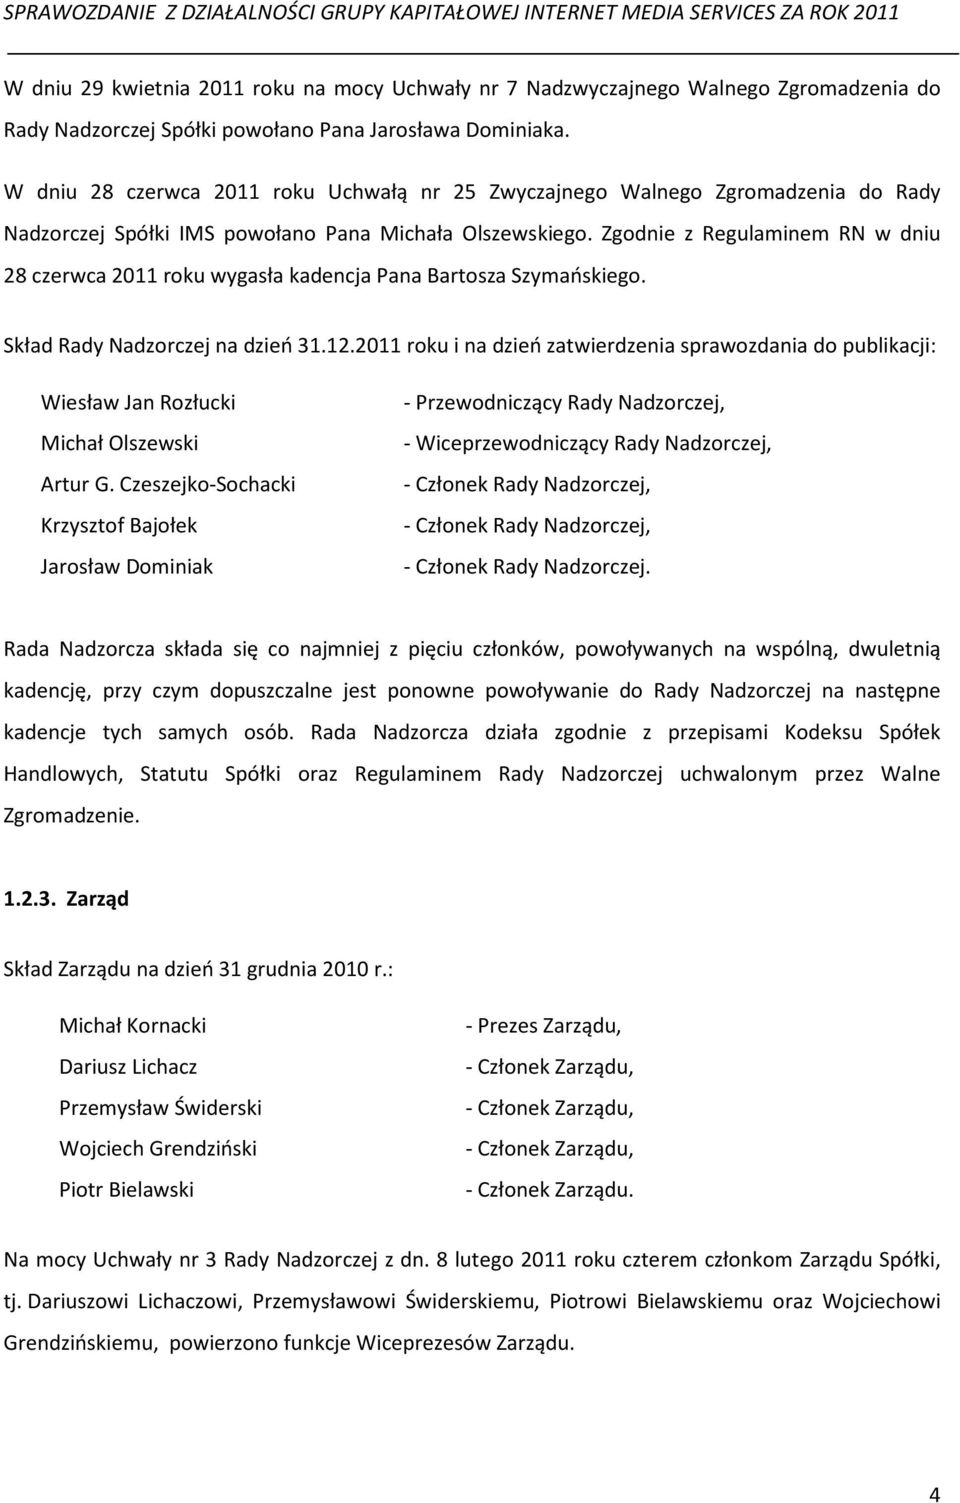 Zgodnie z Regulaminem RN w dniu 28 czerwca 2011 roku wygasła kadencja Pana Bartosza Szymańskiego. Skład Rady Nadzorczej na dzień 31.12.